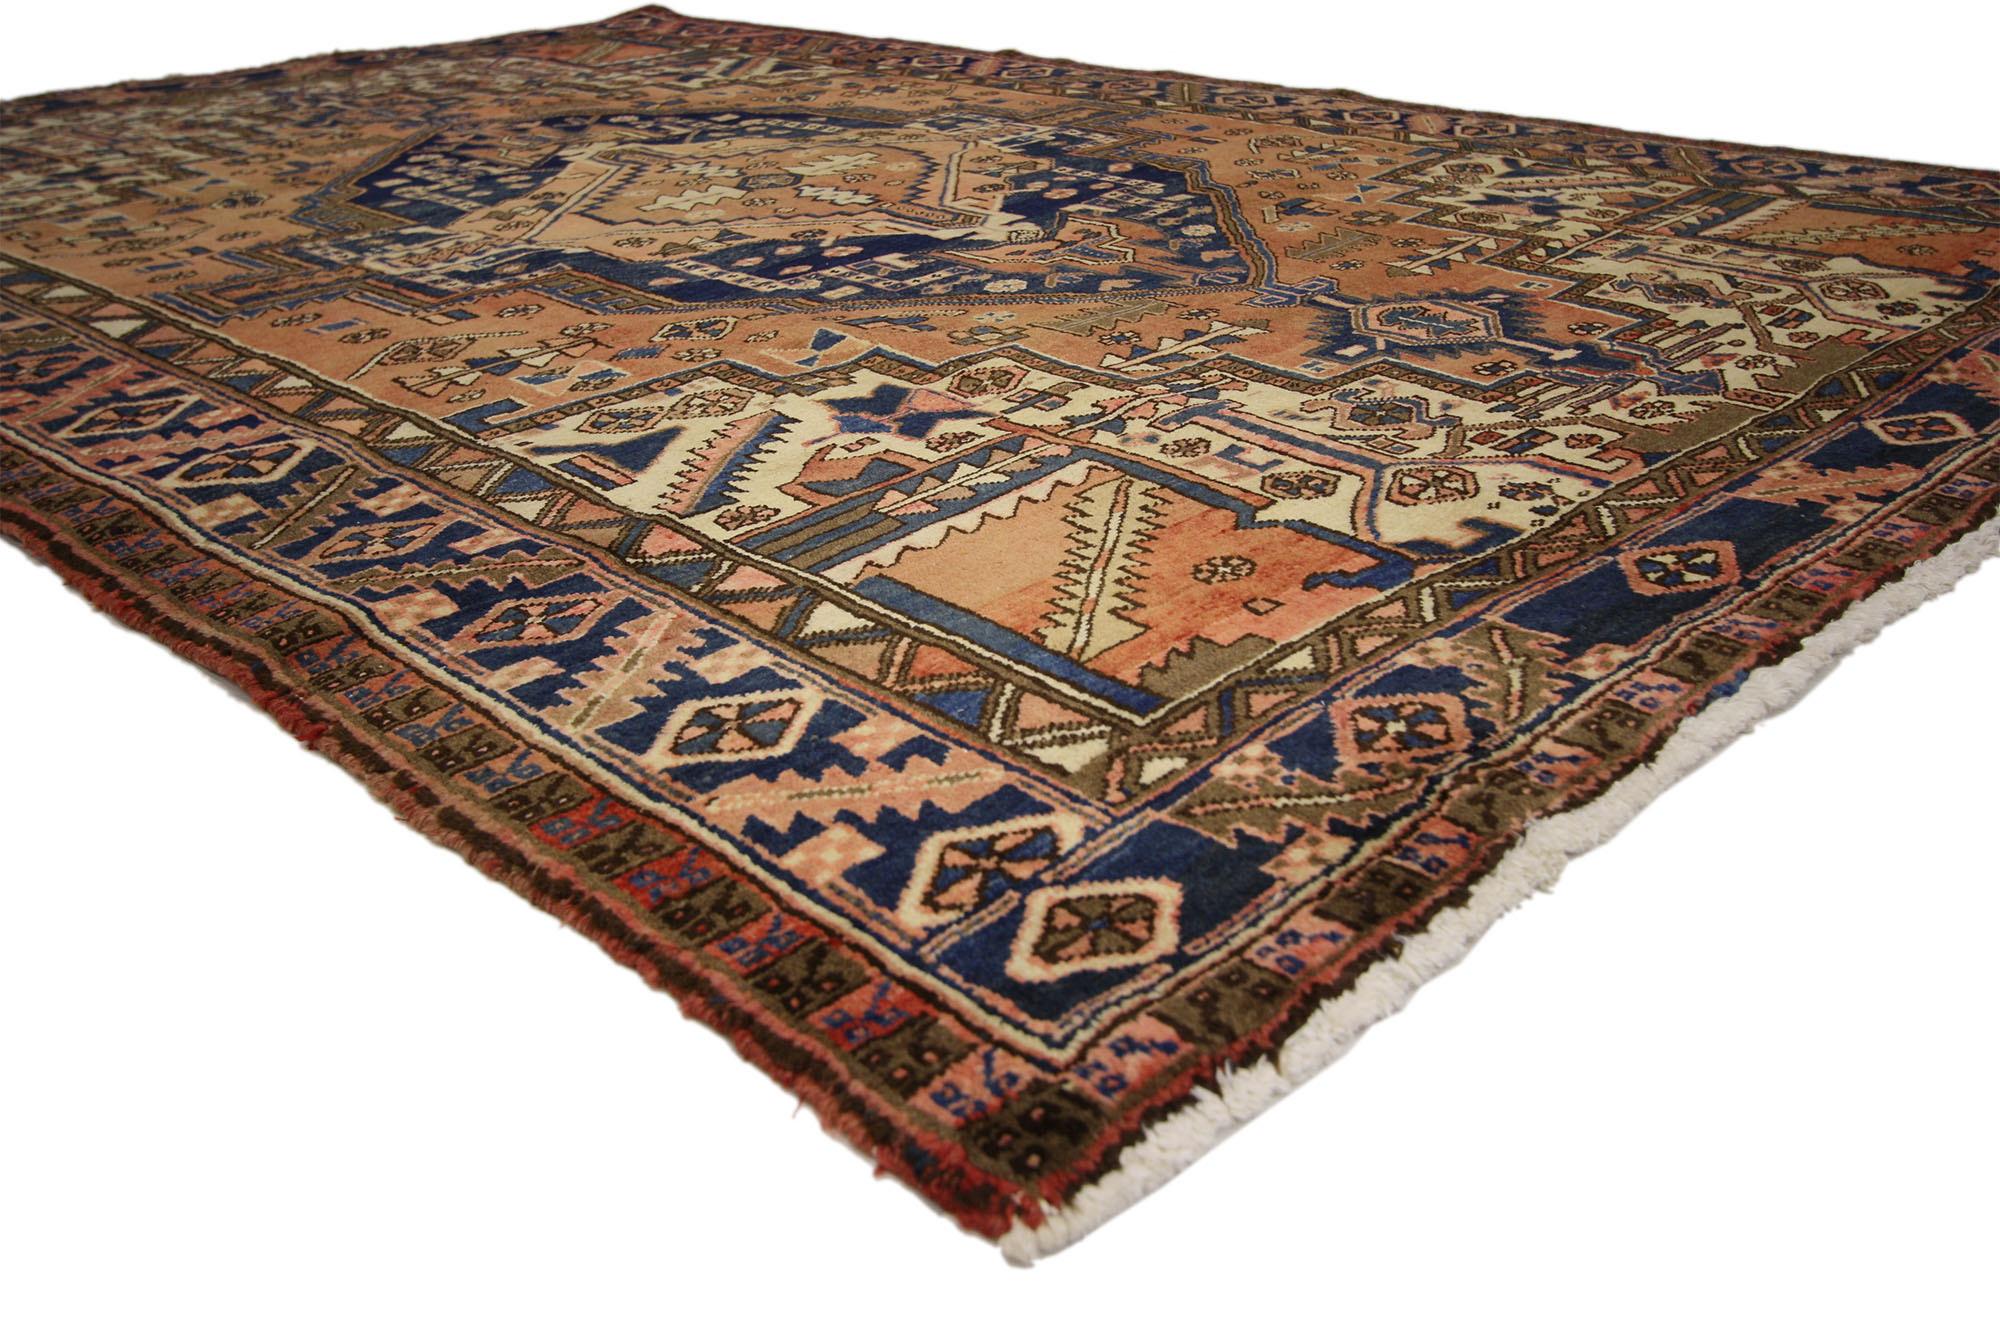 75552 Vintage Persian Heriz Rug, 06'06 x 09'04. Antike gewaschene persische Heriz-Teppiche sind eine spezielle Kategorie von Heriz-Teppichen, die einem einzigartigen Waschverfahren unterzogen werden, um die Farben weicher zu machen. Diese